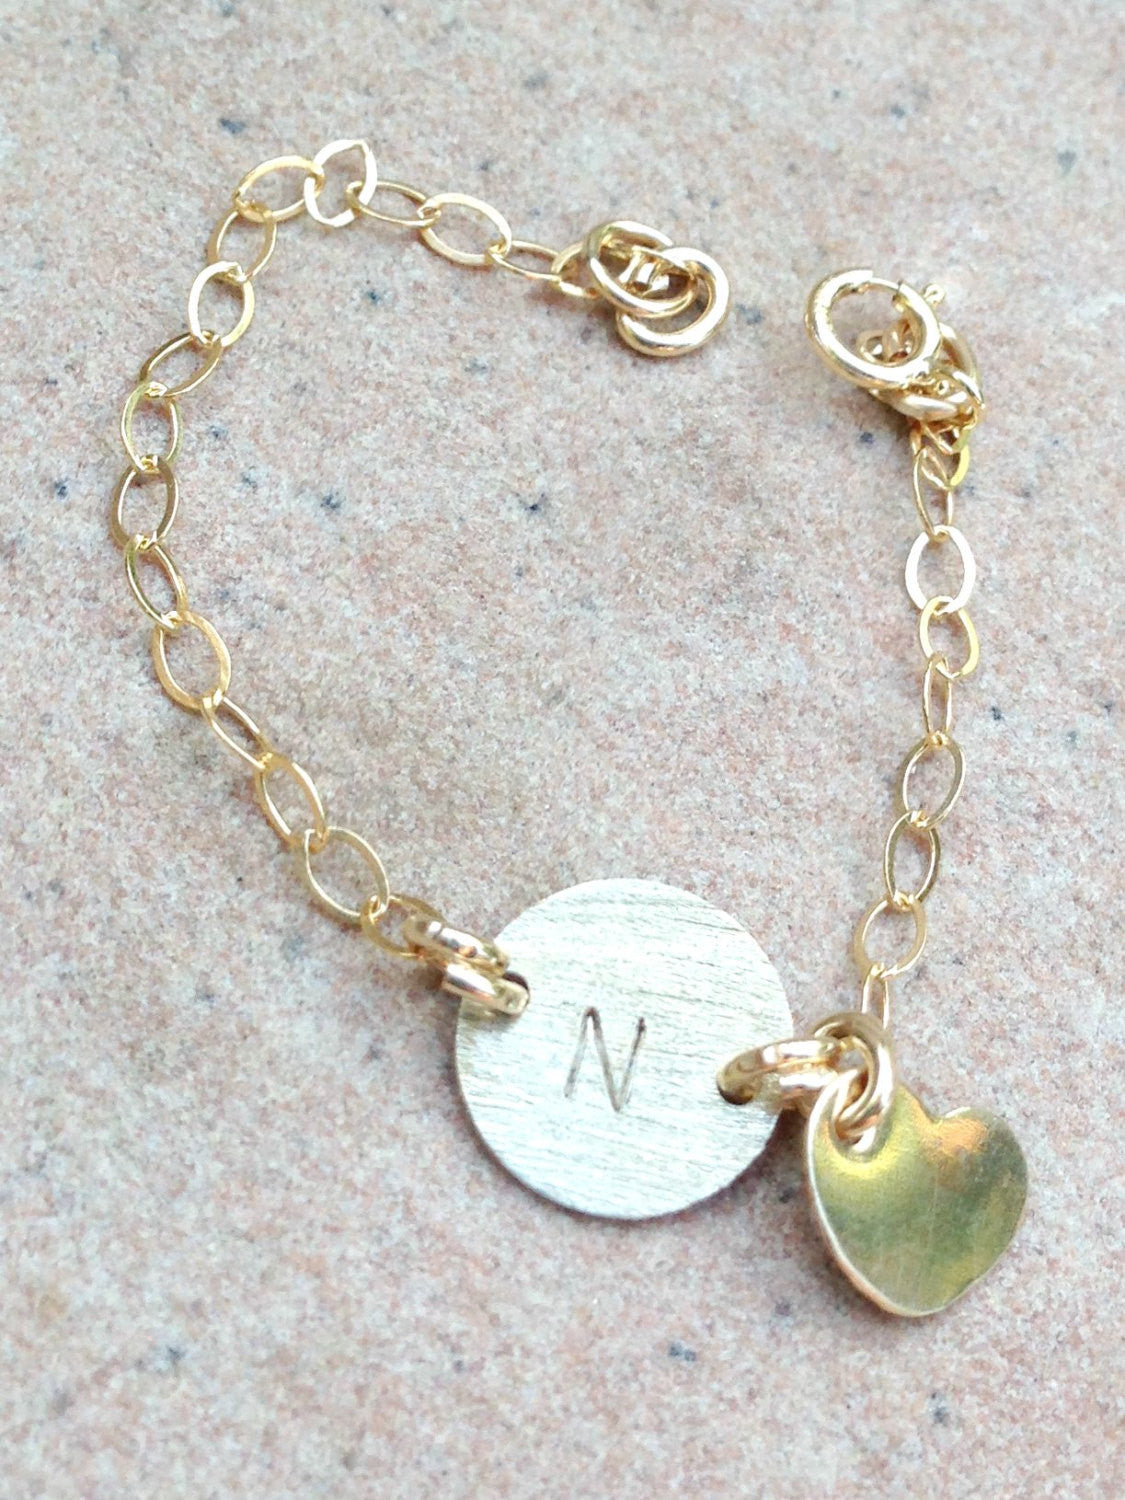 Red Bangle Gold Graduation gift for women Grad gift Daughter bracelet 24k  HMADE | eBay